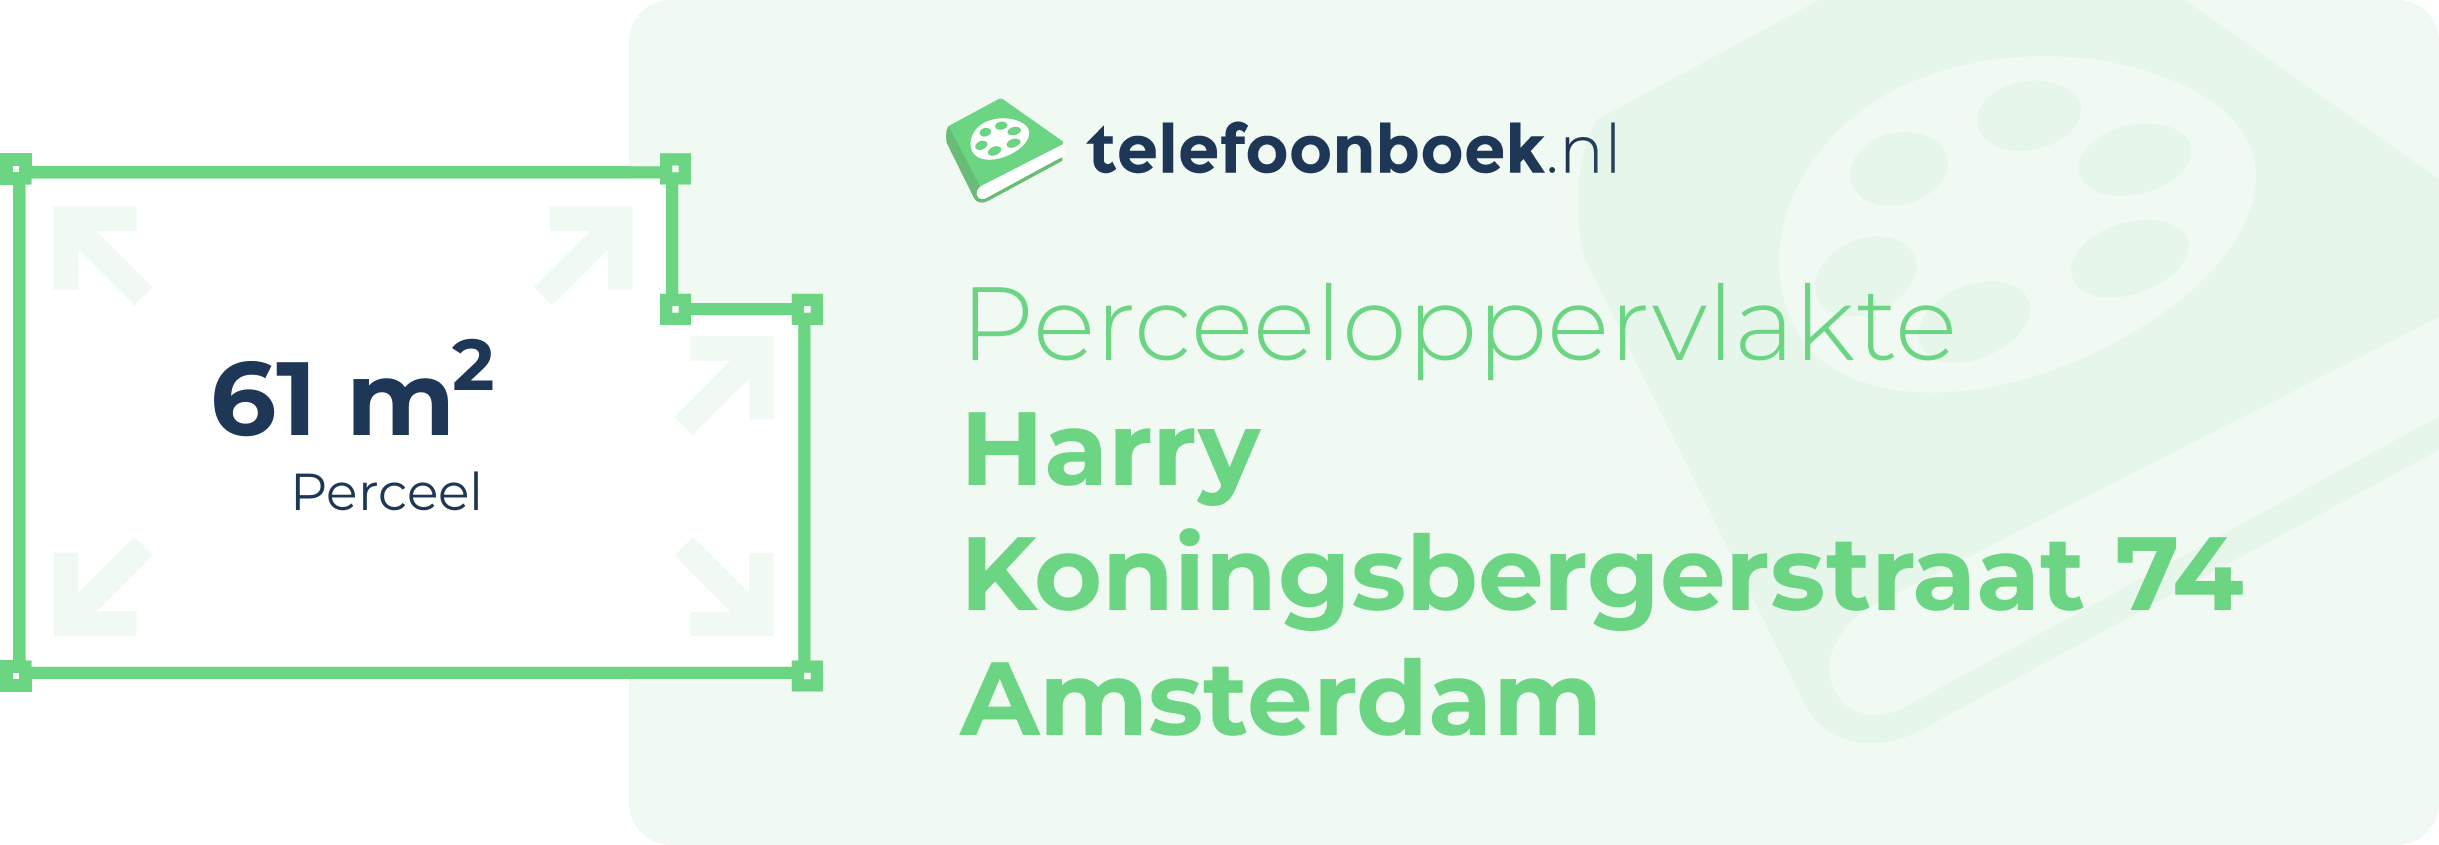 Perceeloppervlakte Harry Koningsbergerstraat 74 Amsterdam